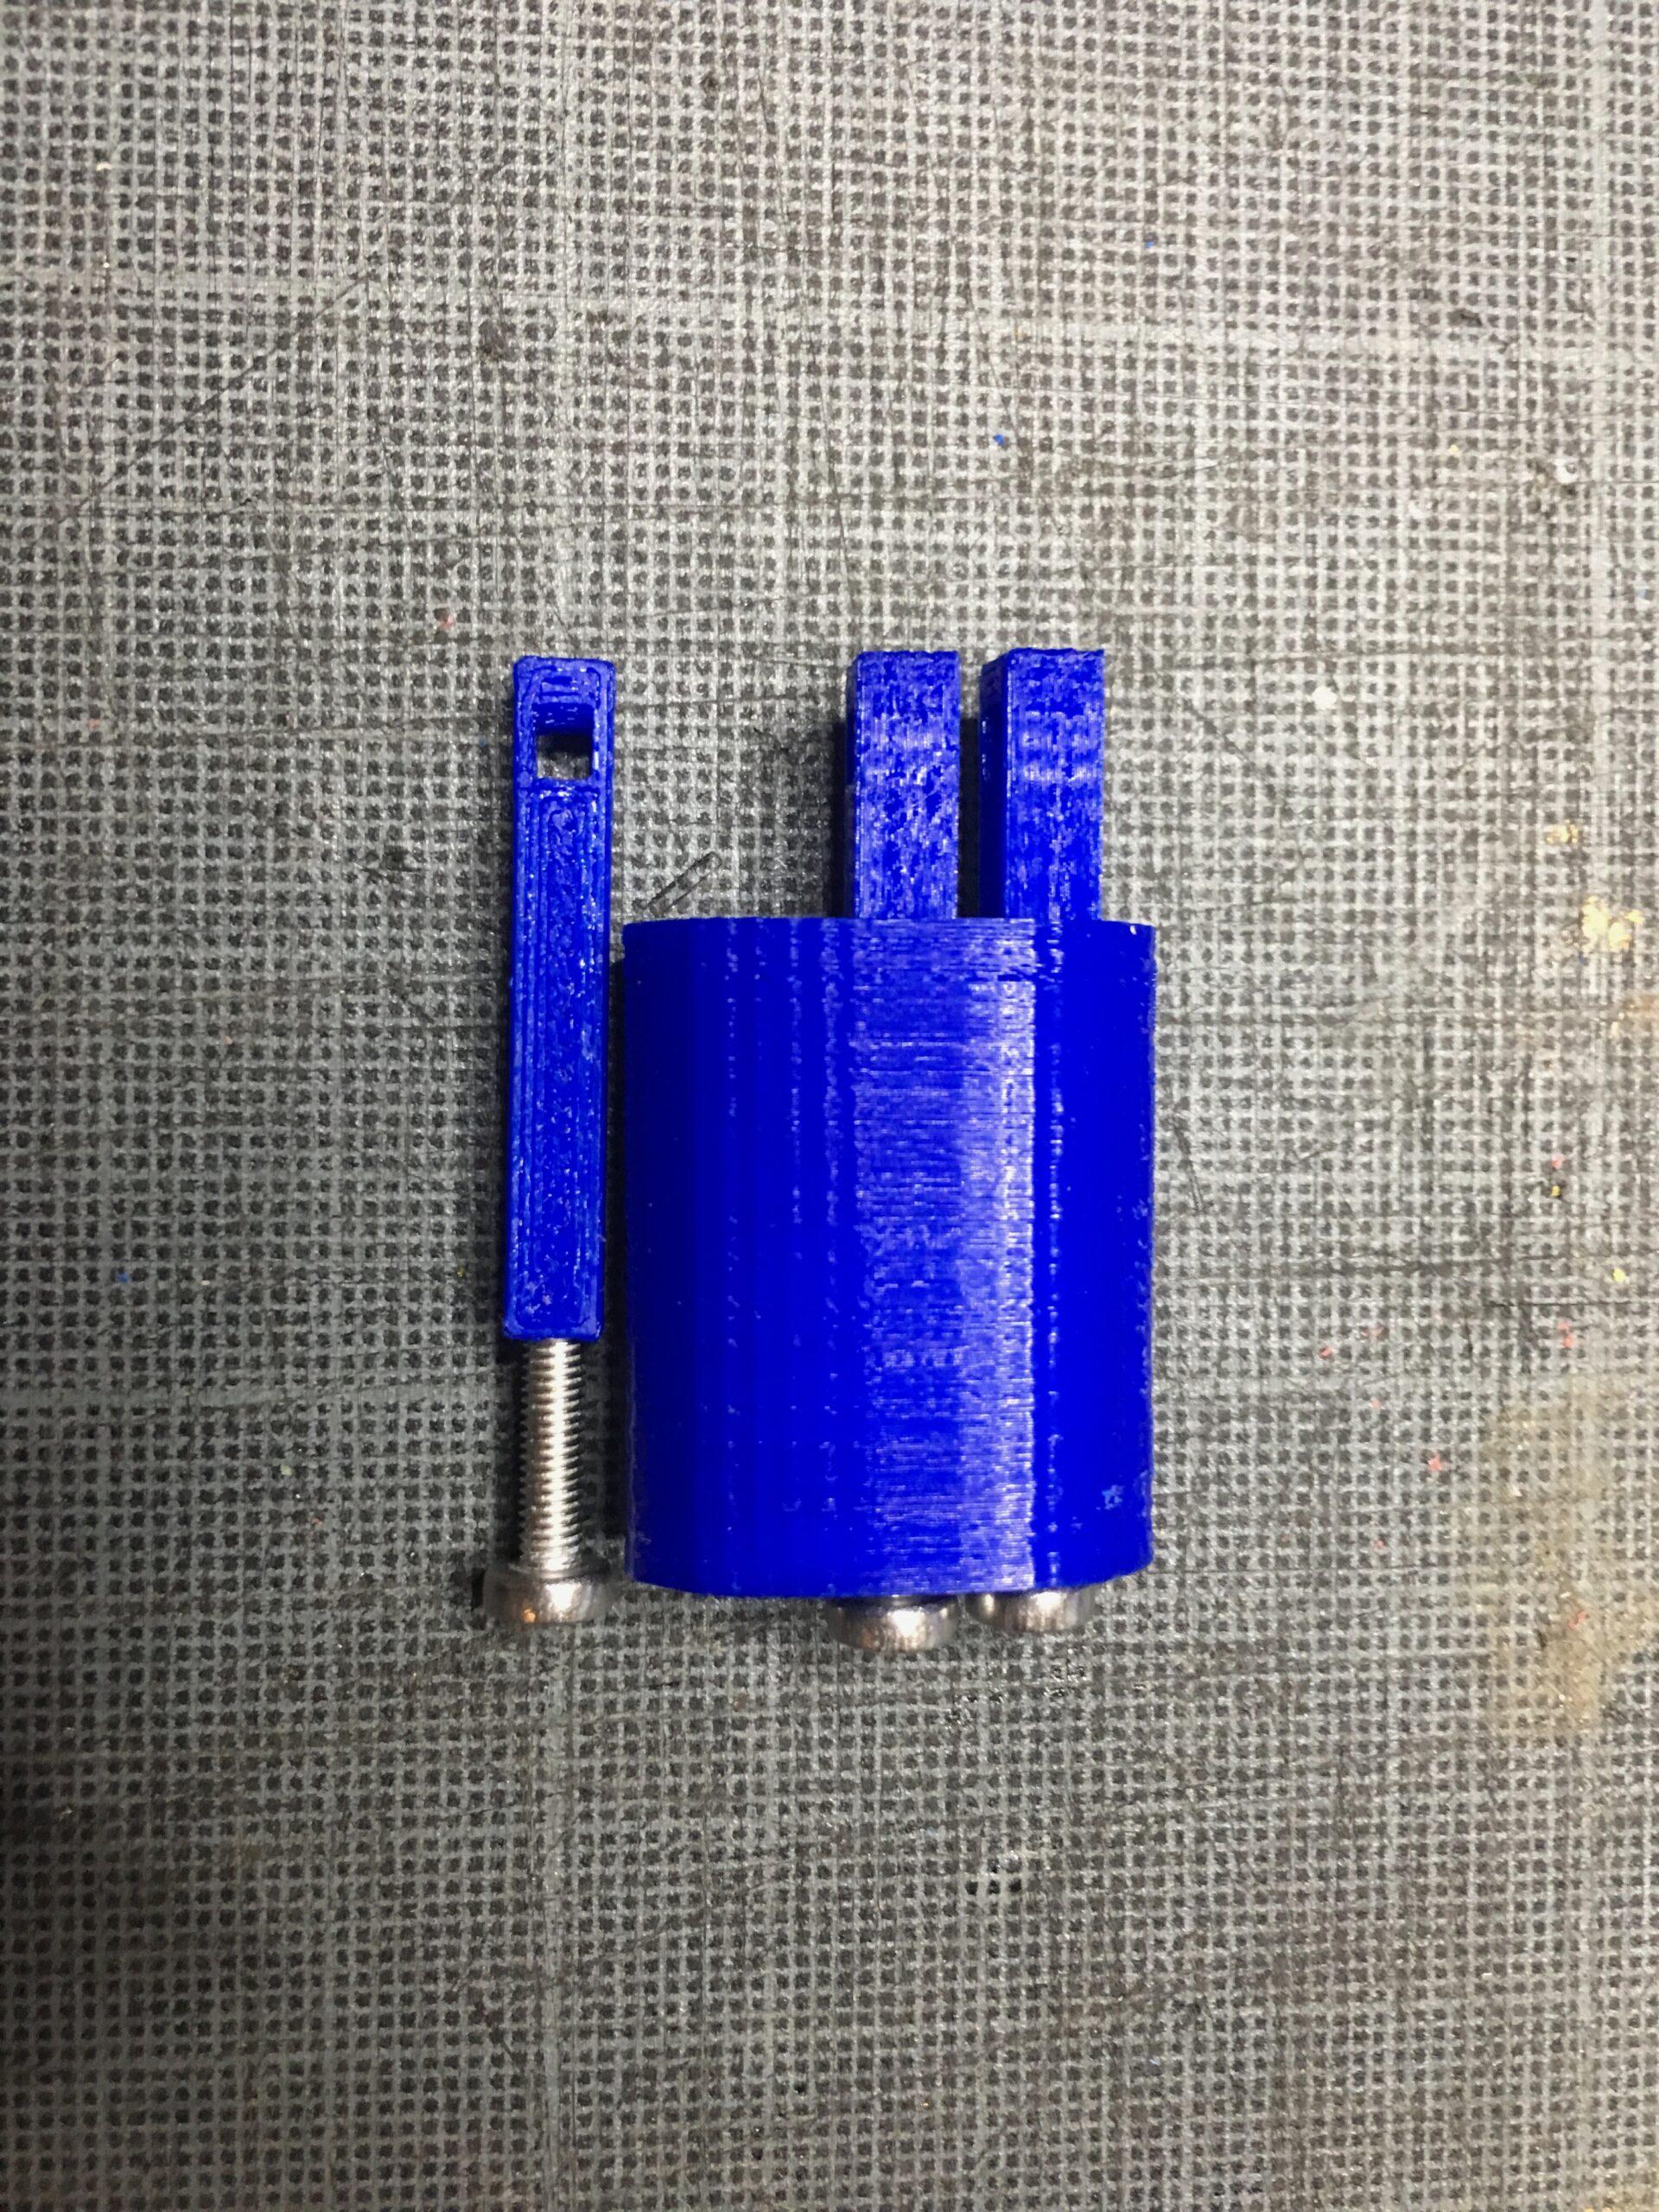 photo 1 du tensionneur à trois pins utilisé pour la fabrication de l'appareil e-Nable